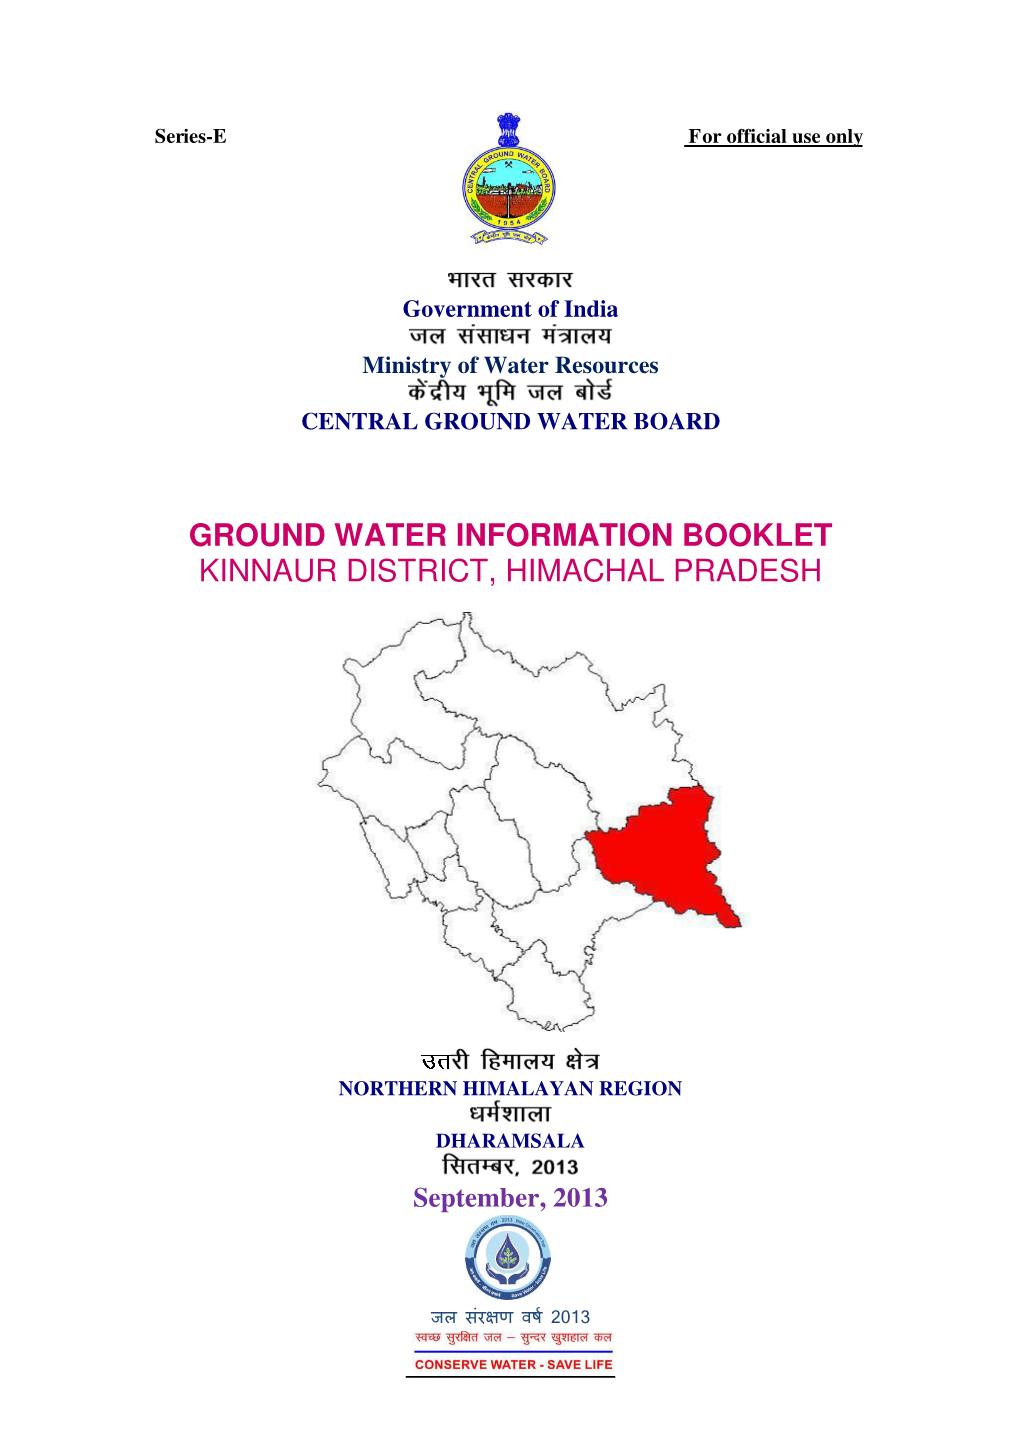 Ground Water Information Booklet Kinnaur District, Himachal Pradesh